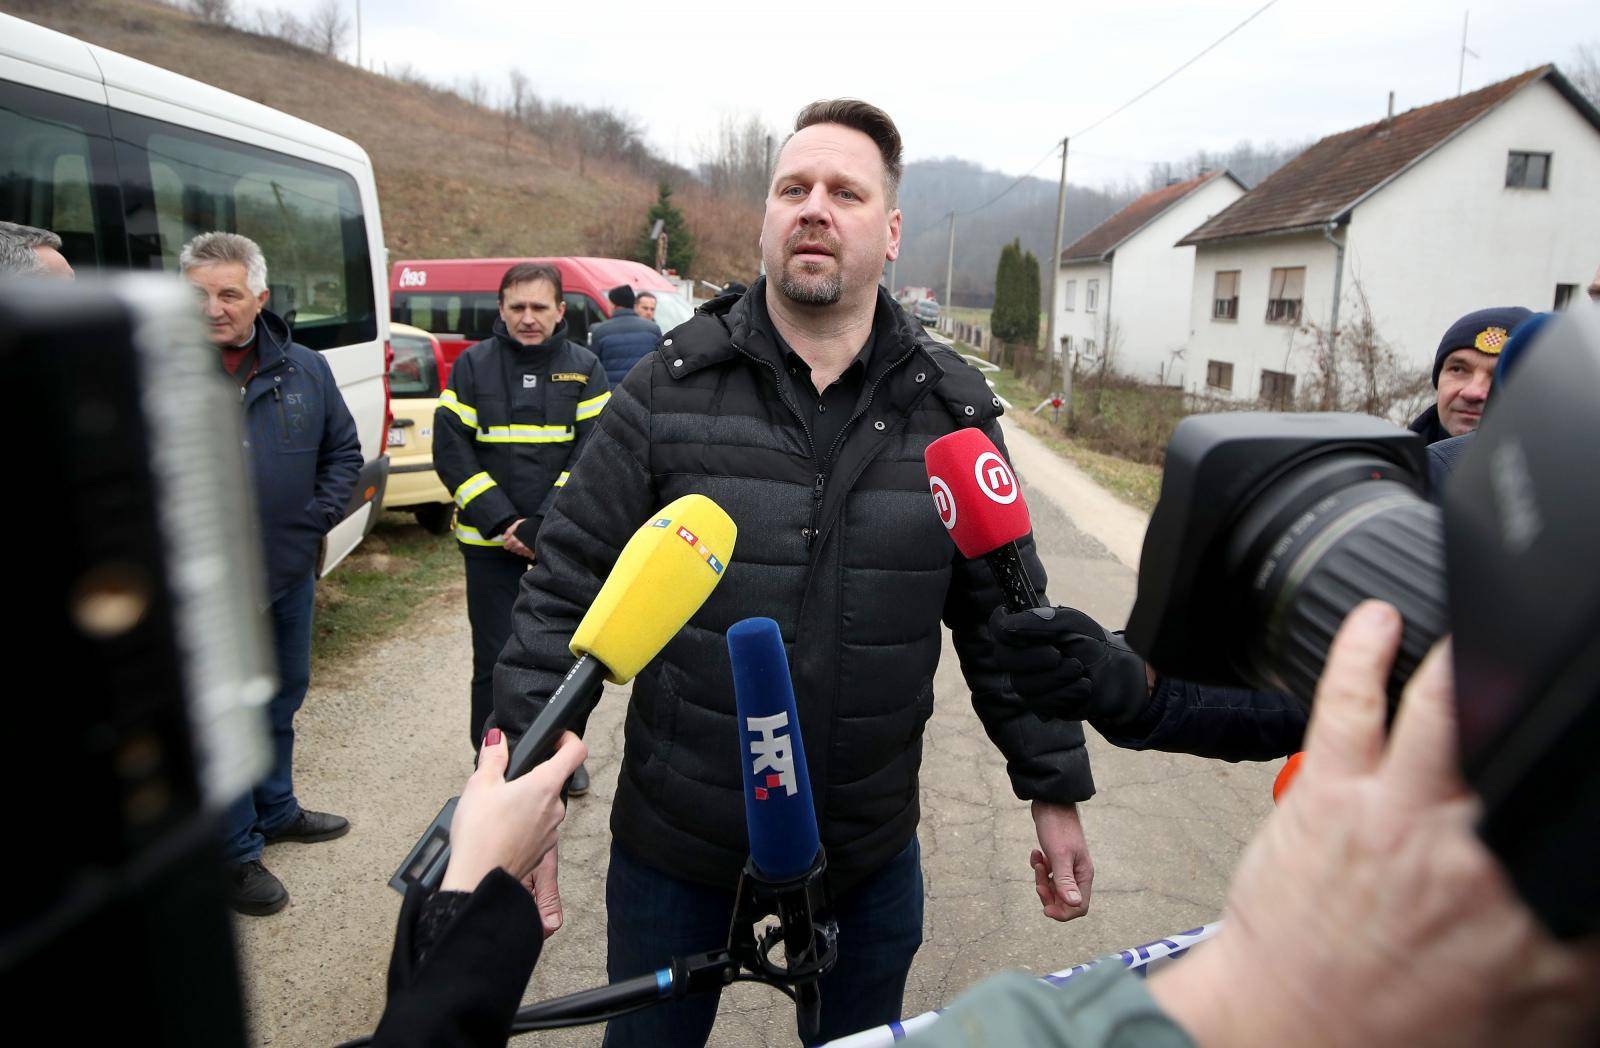 Premijer Andrej Plenković obišao mjesto tragedije i dao izjavu